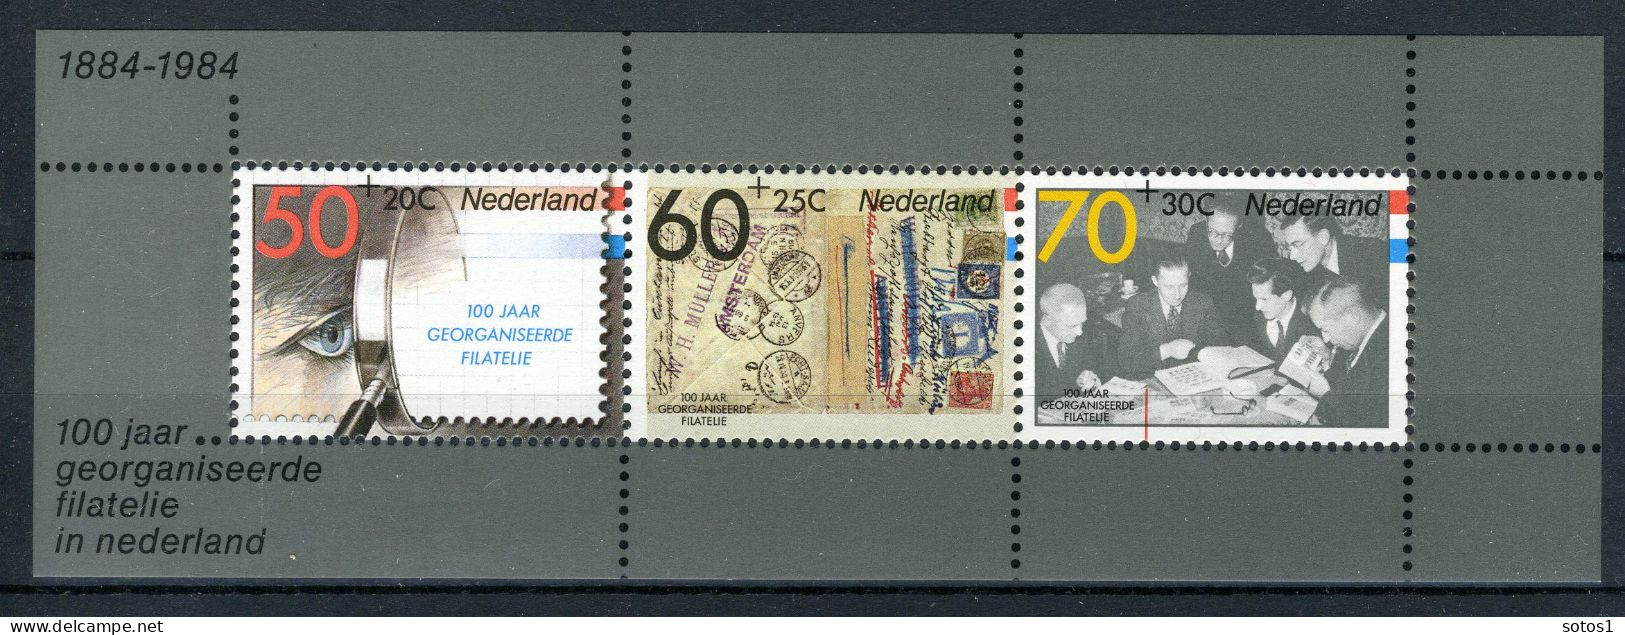 NEDERLAND 1313 MNH Blok 1984 - Filacento -2 - Blocks & Sheetlets